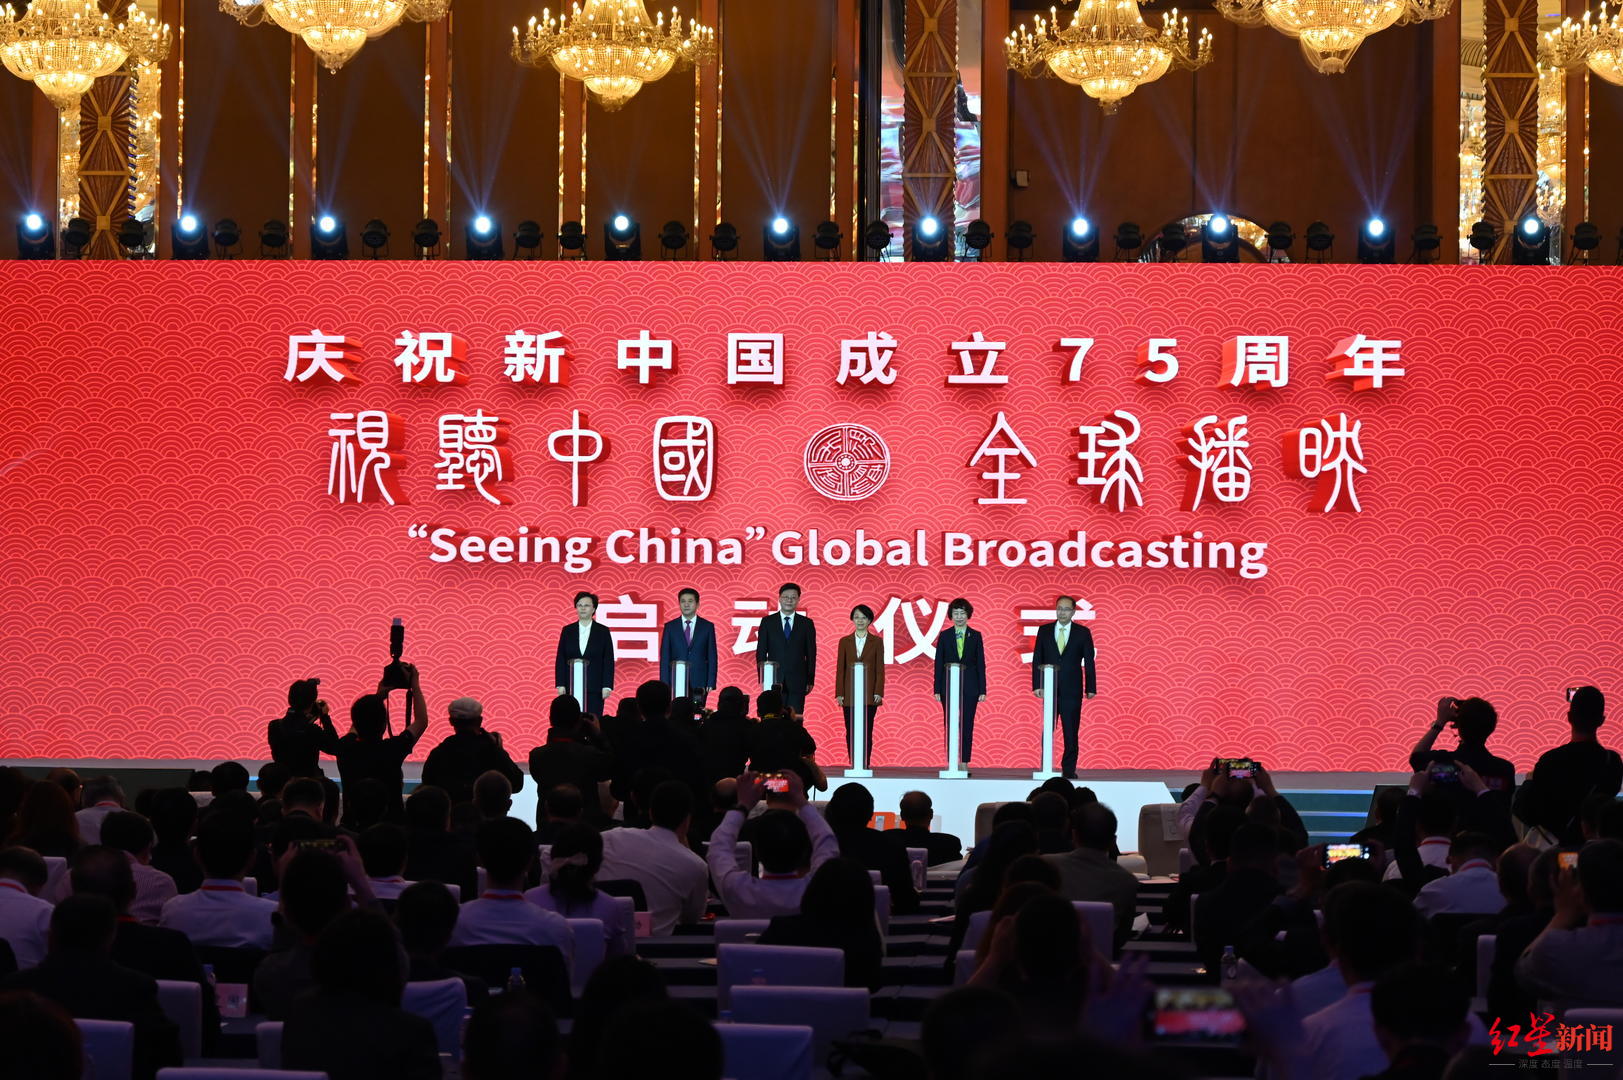 ▲庆祝新中国成立75周年“视听中国 全球播映”启动仪式